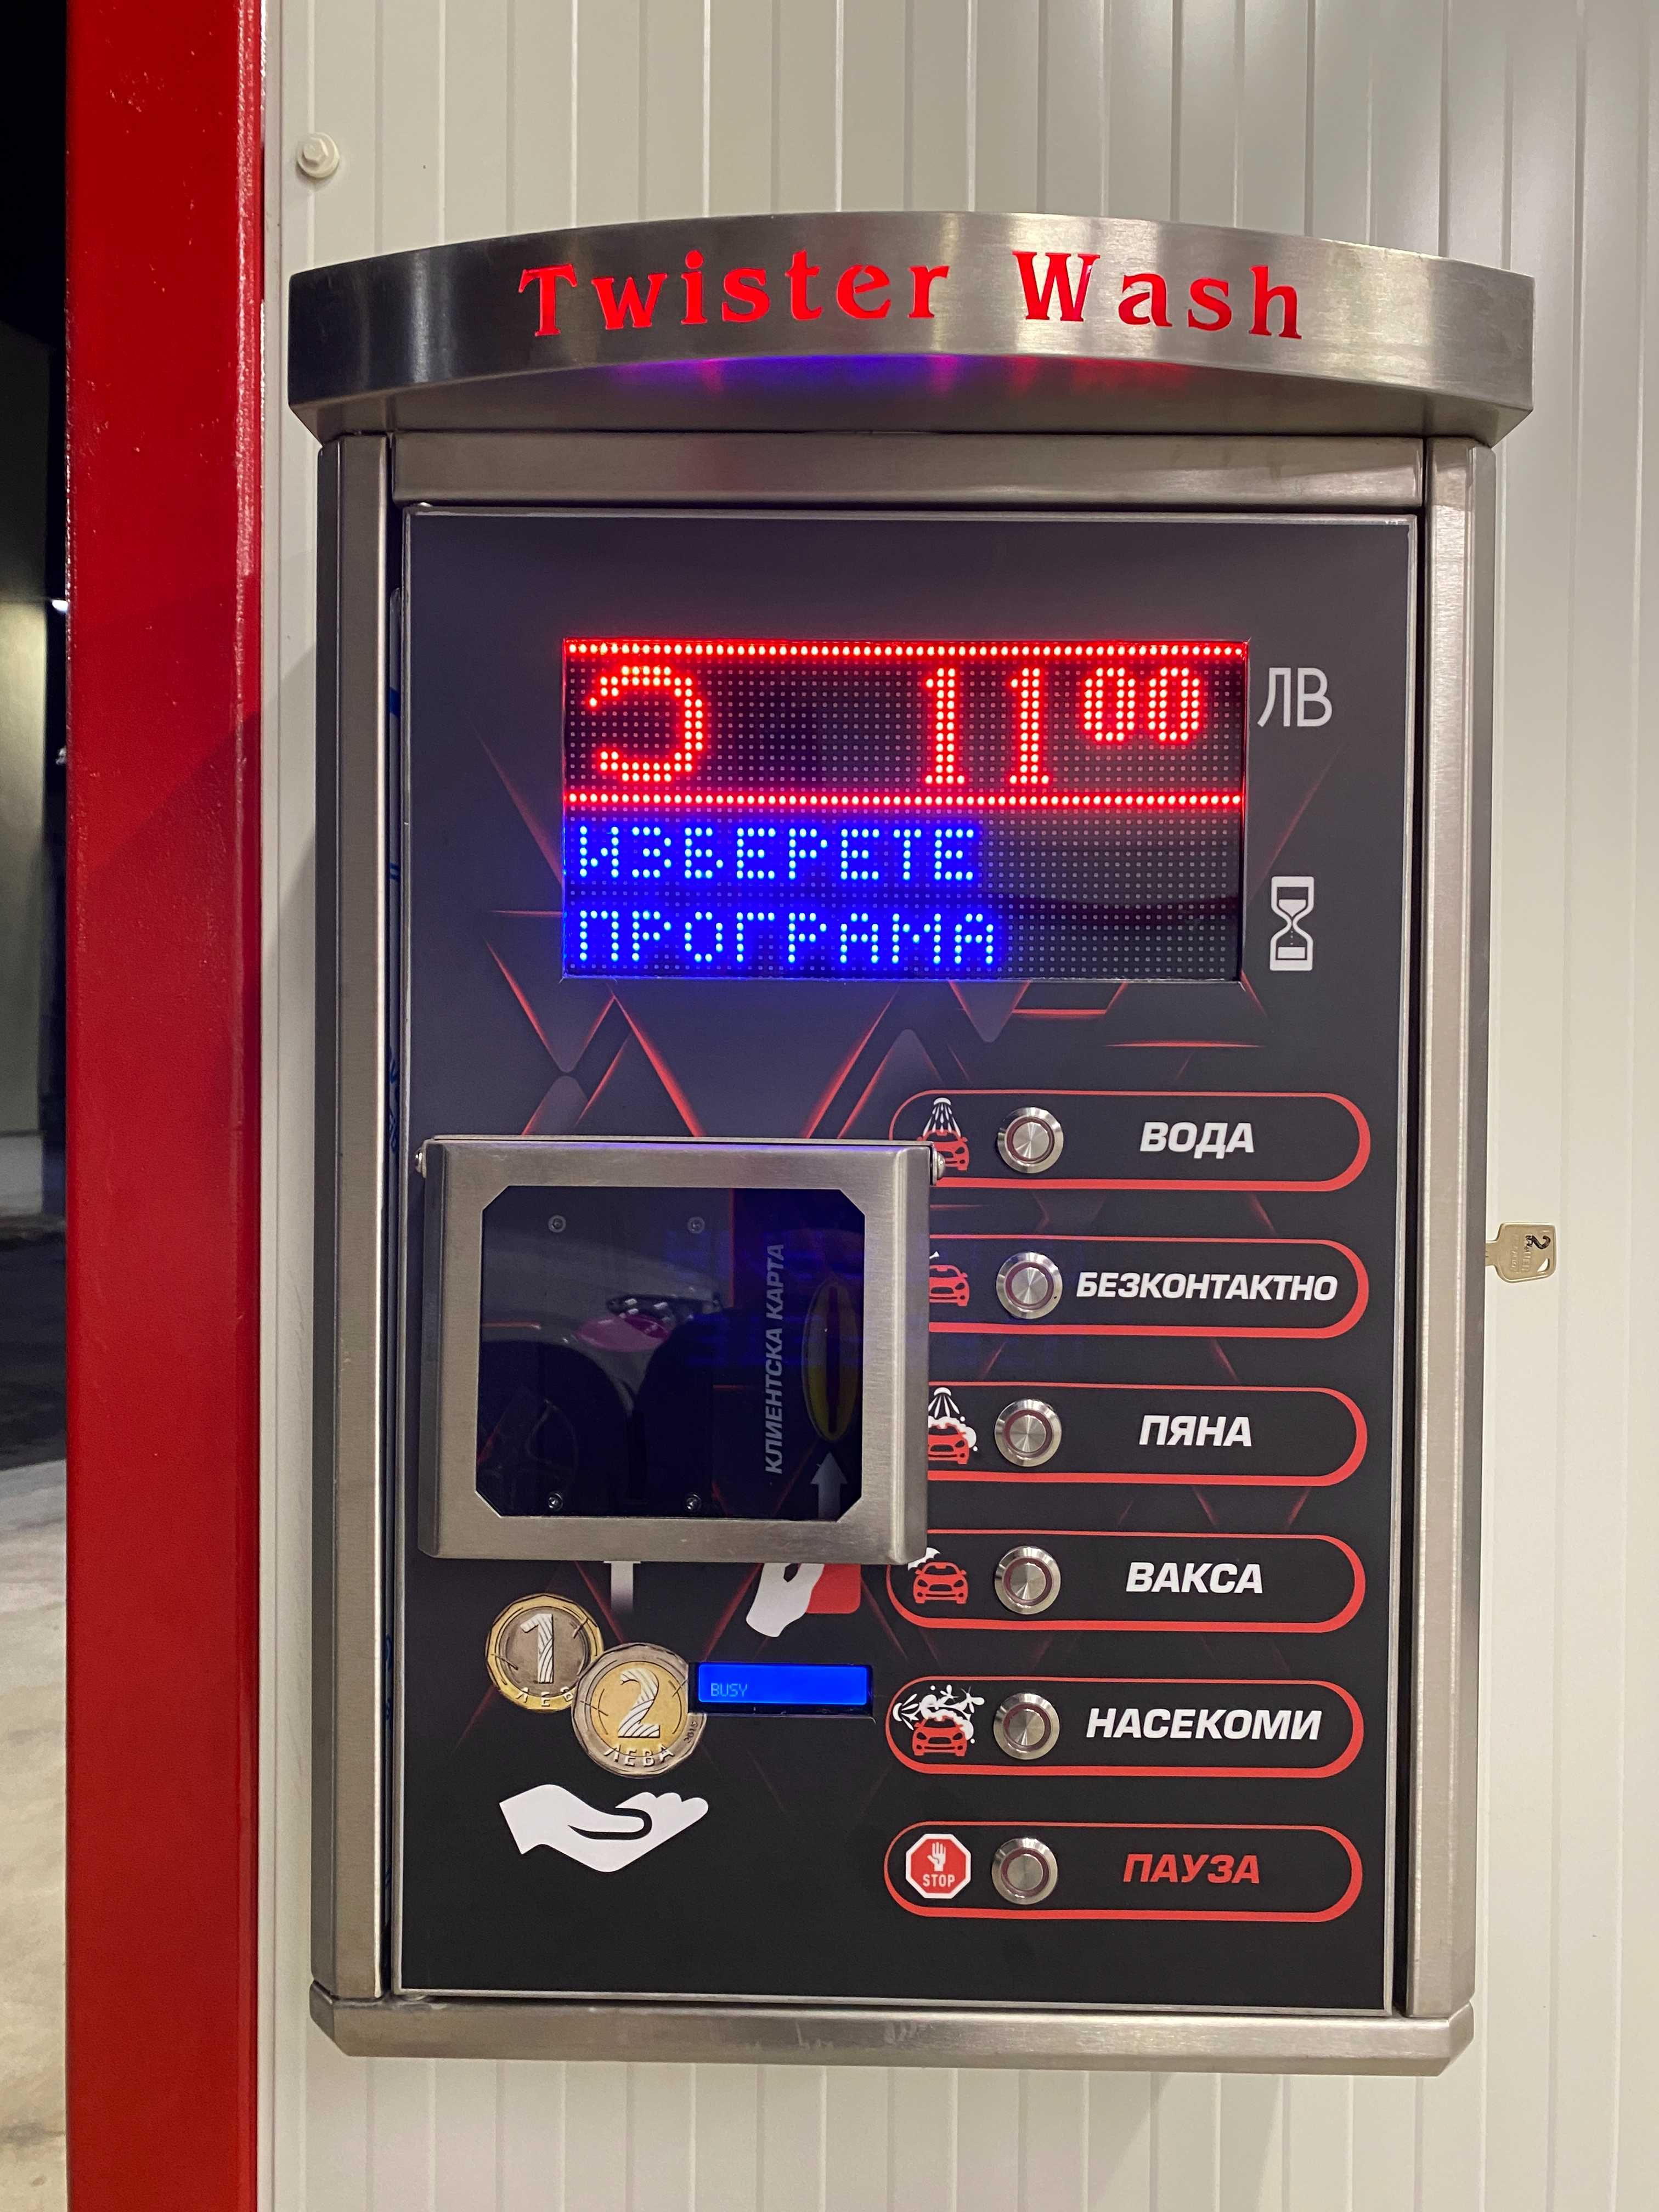 Оборудване за плащане с банкова карта PayPass, кафе машина, автомивка